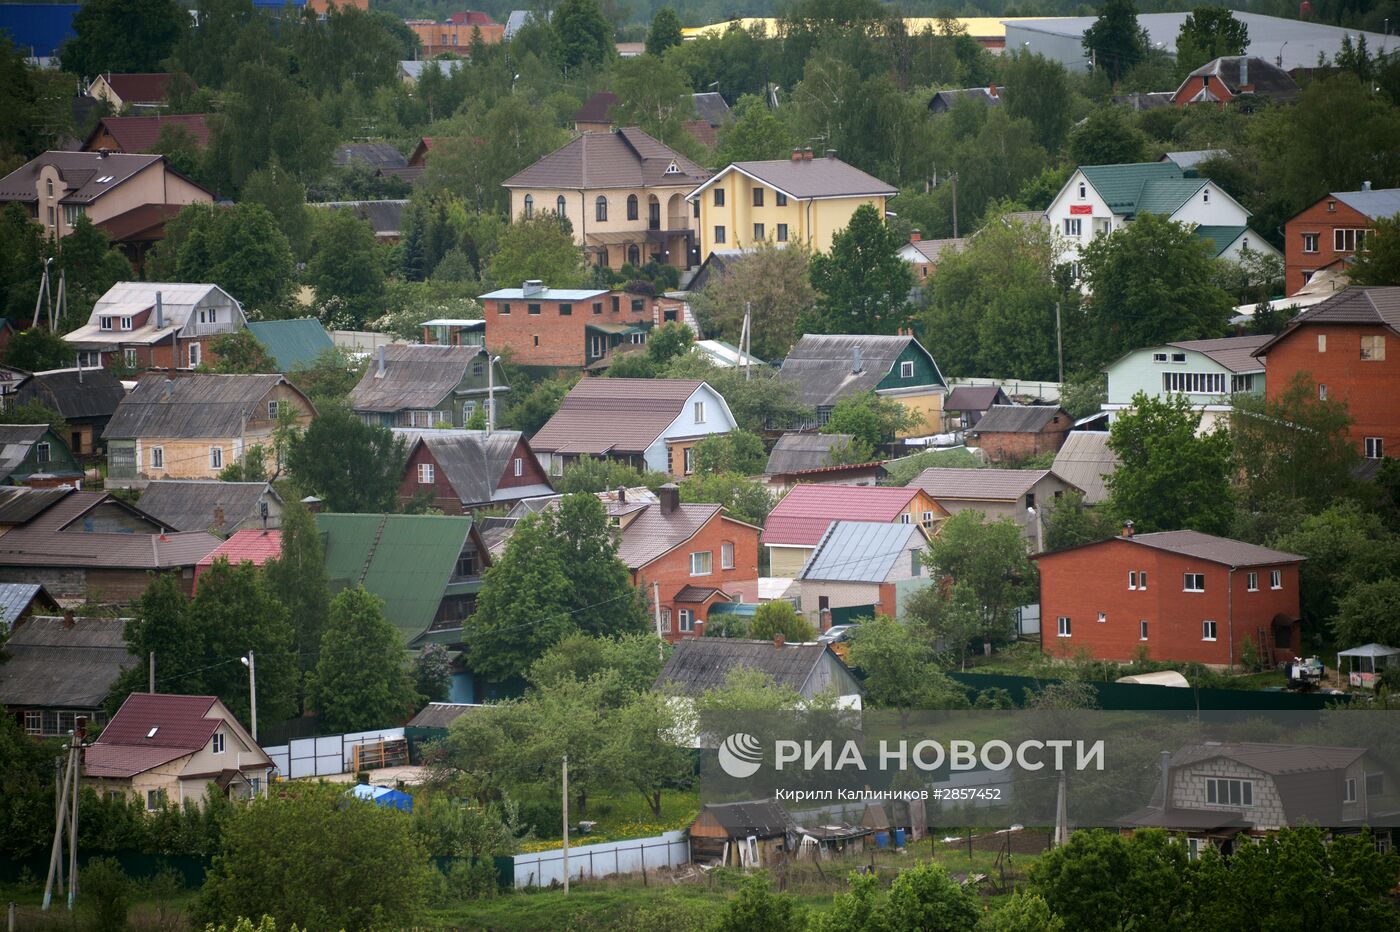 Поселок Поварово в Московской области